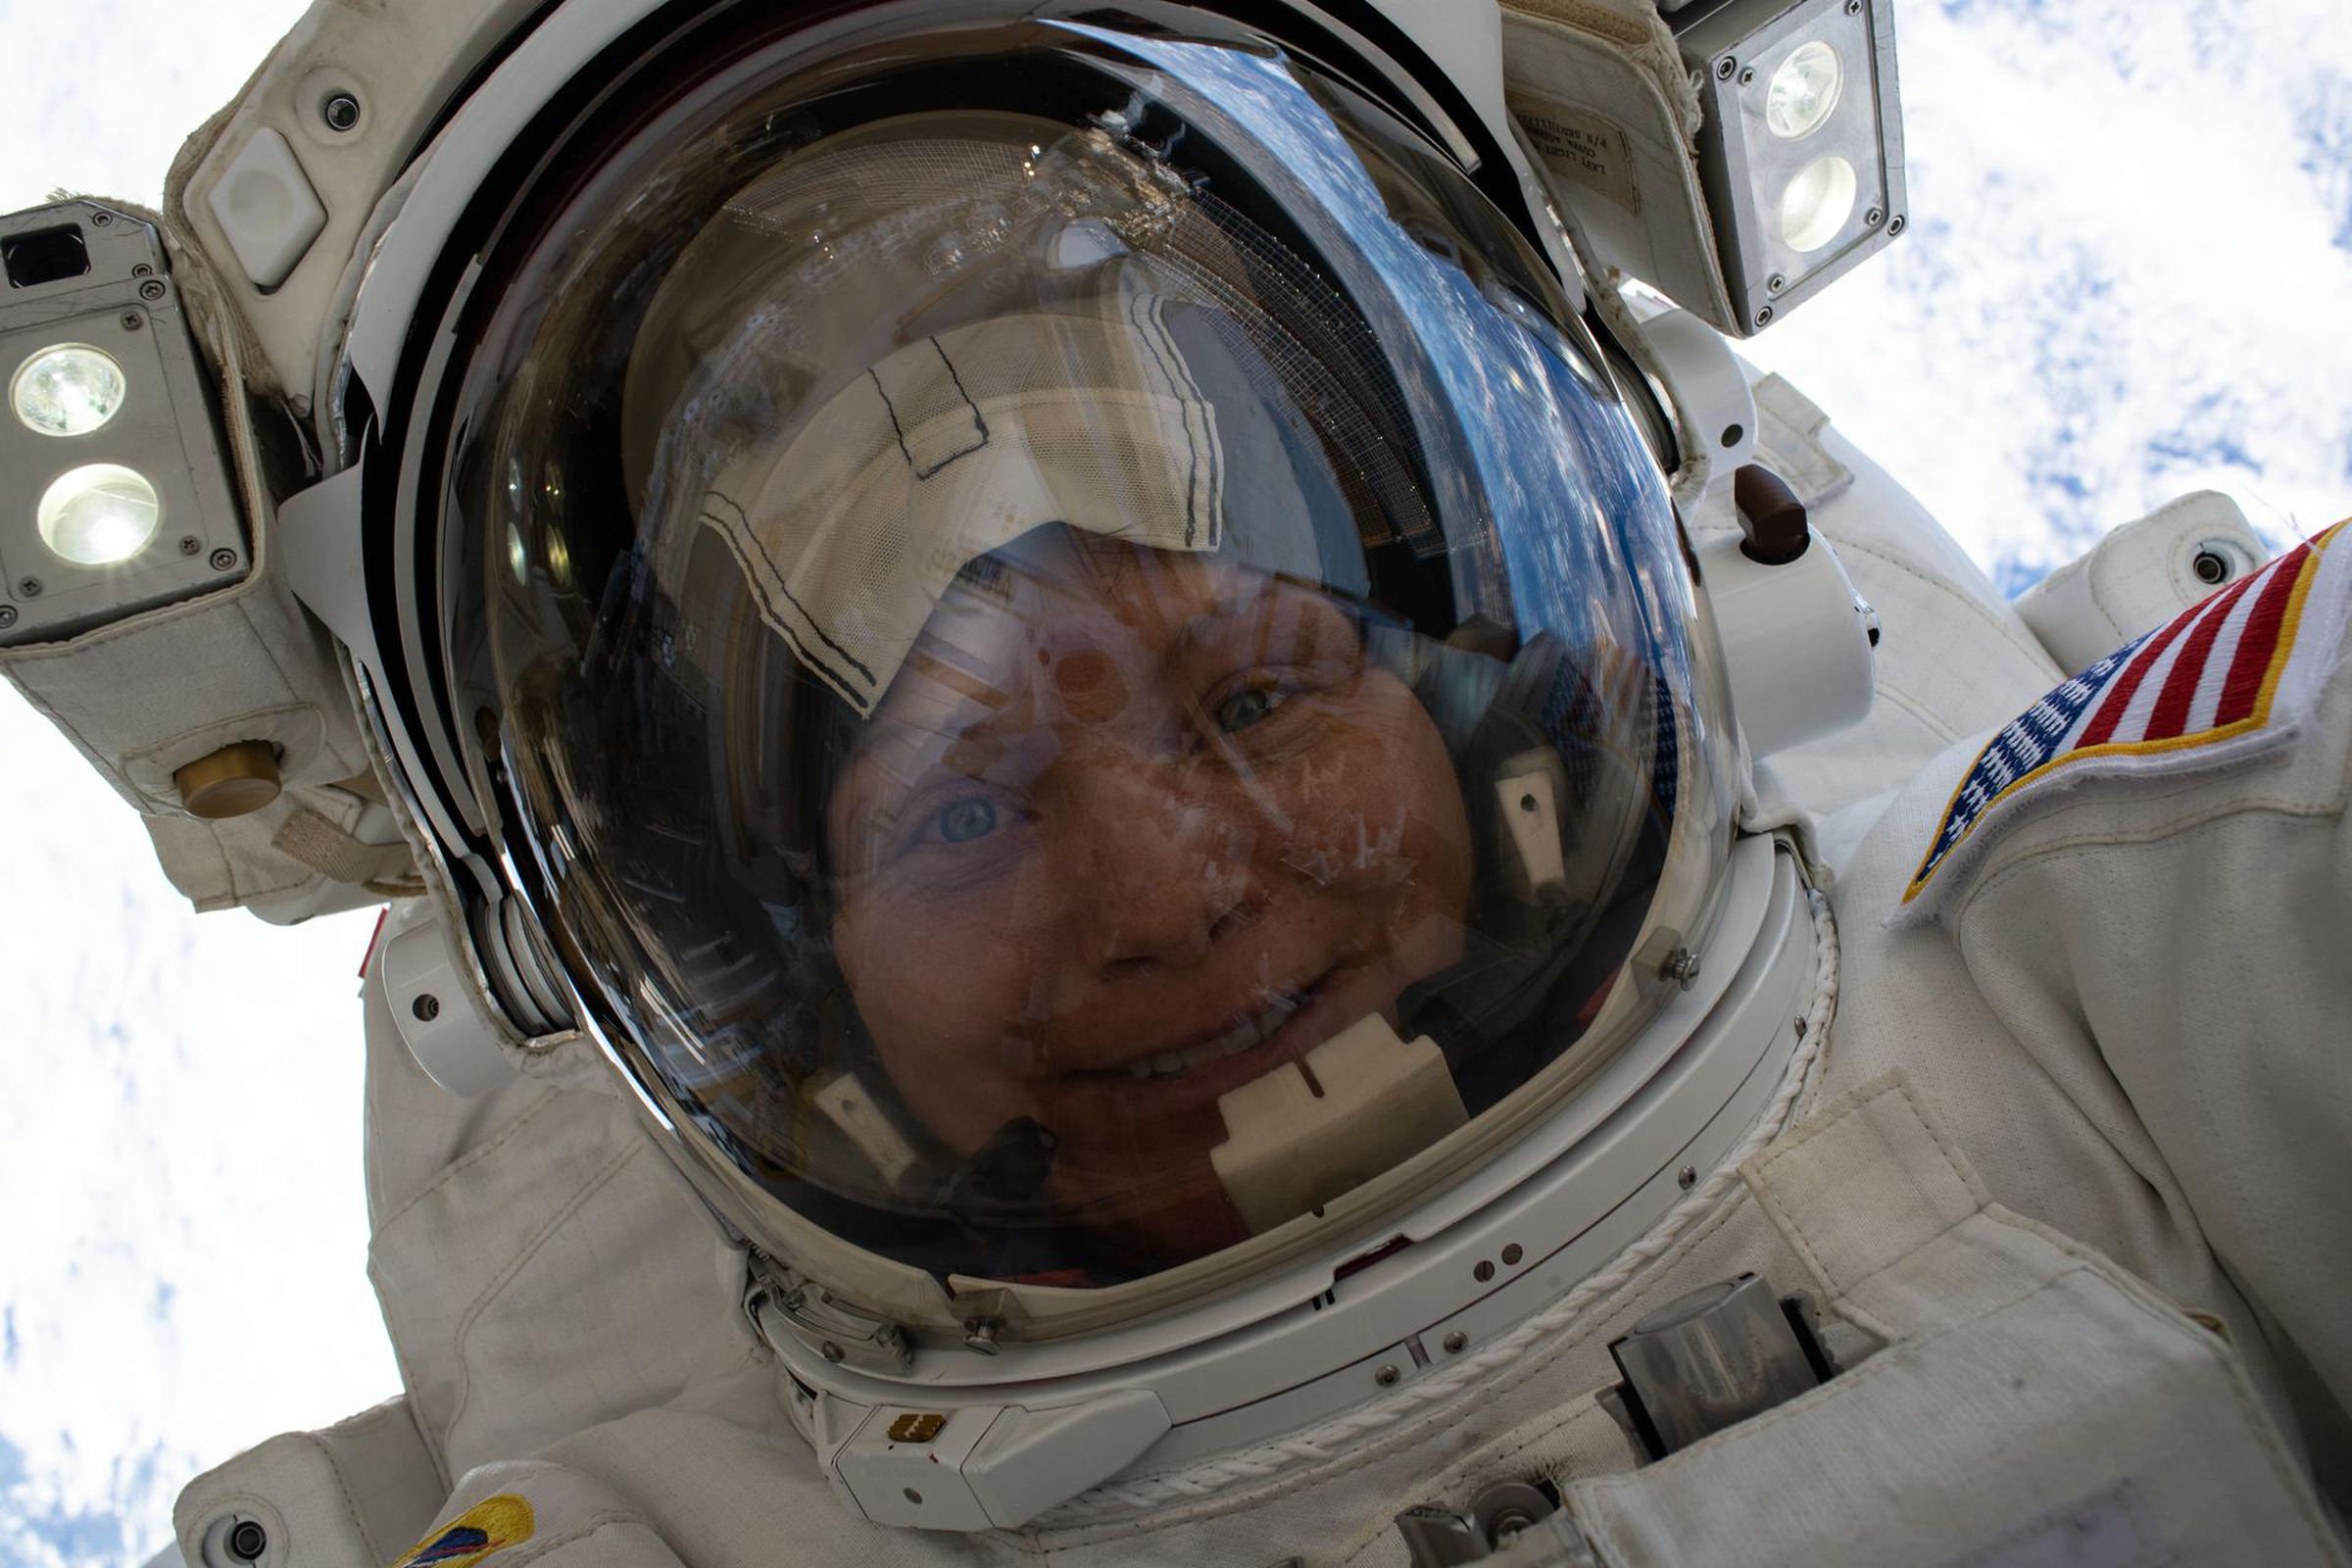 NASA’s Anne McClain takes a selfie during her recent spacewalk.